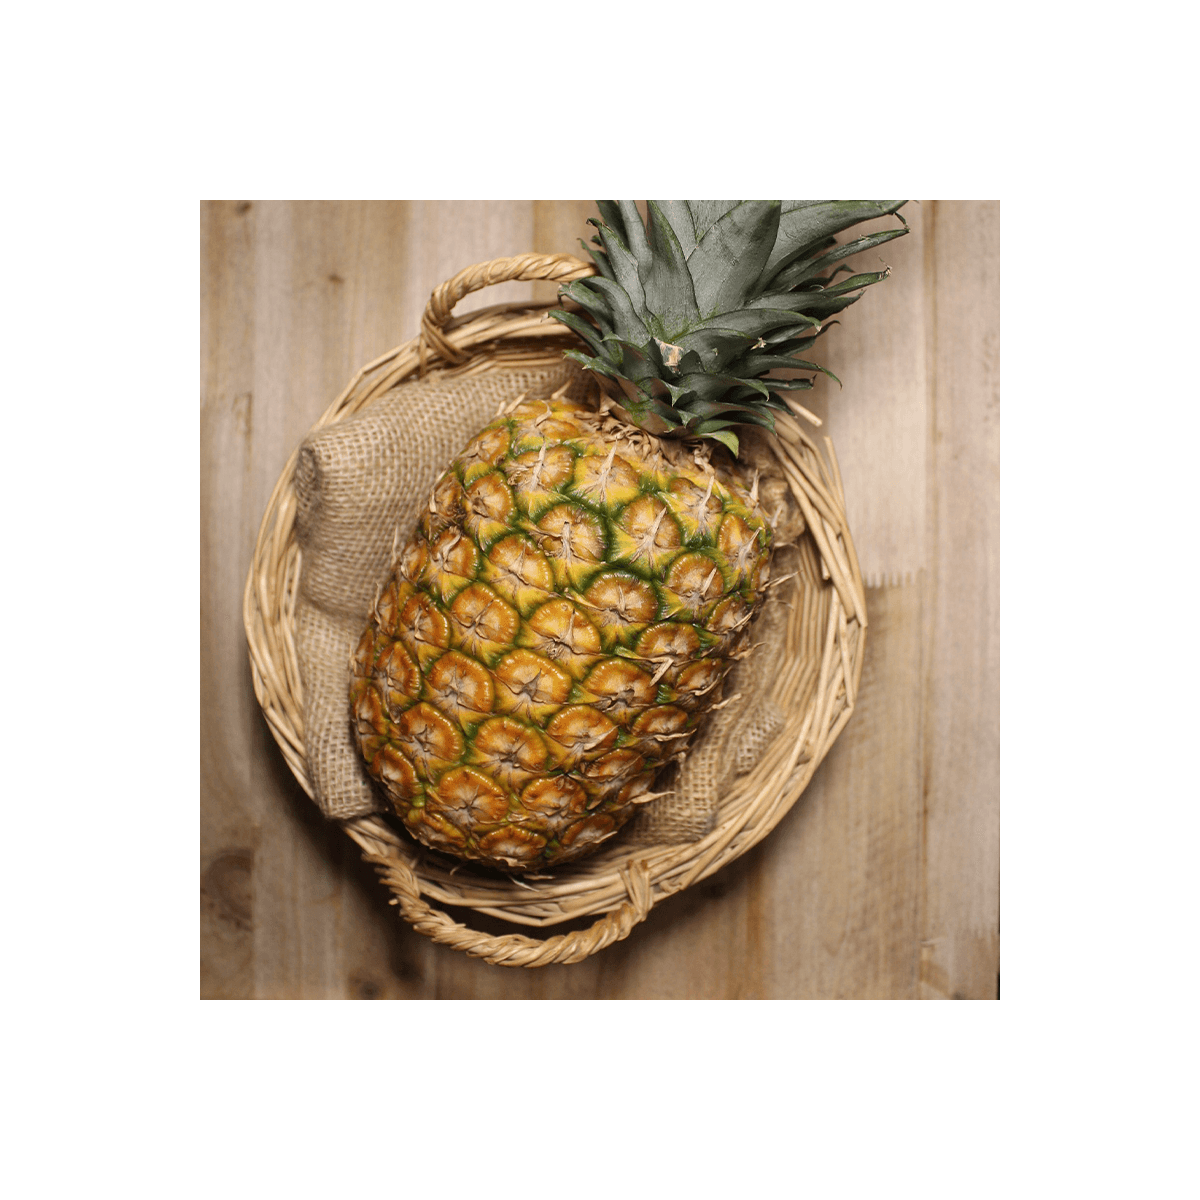 Piña - Kiwis, Piñas, Aguacate y Tropicales -1- Lo mejor de la fruta